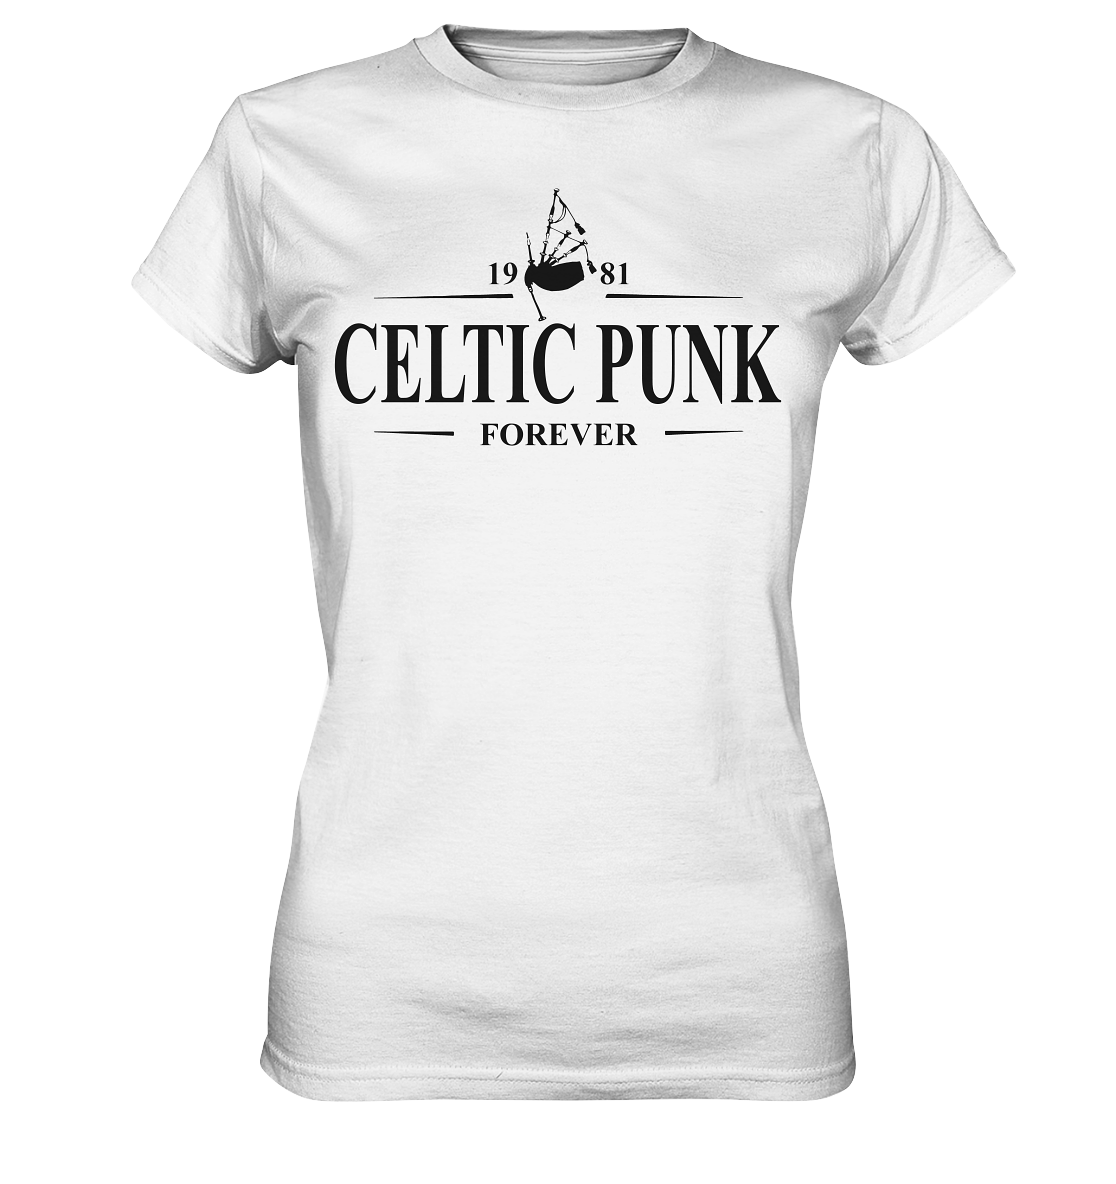 Celtic Punk "Forever" - Ladies Premium Shirt